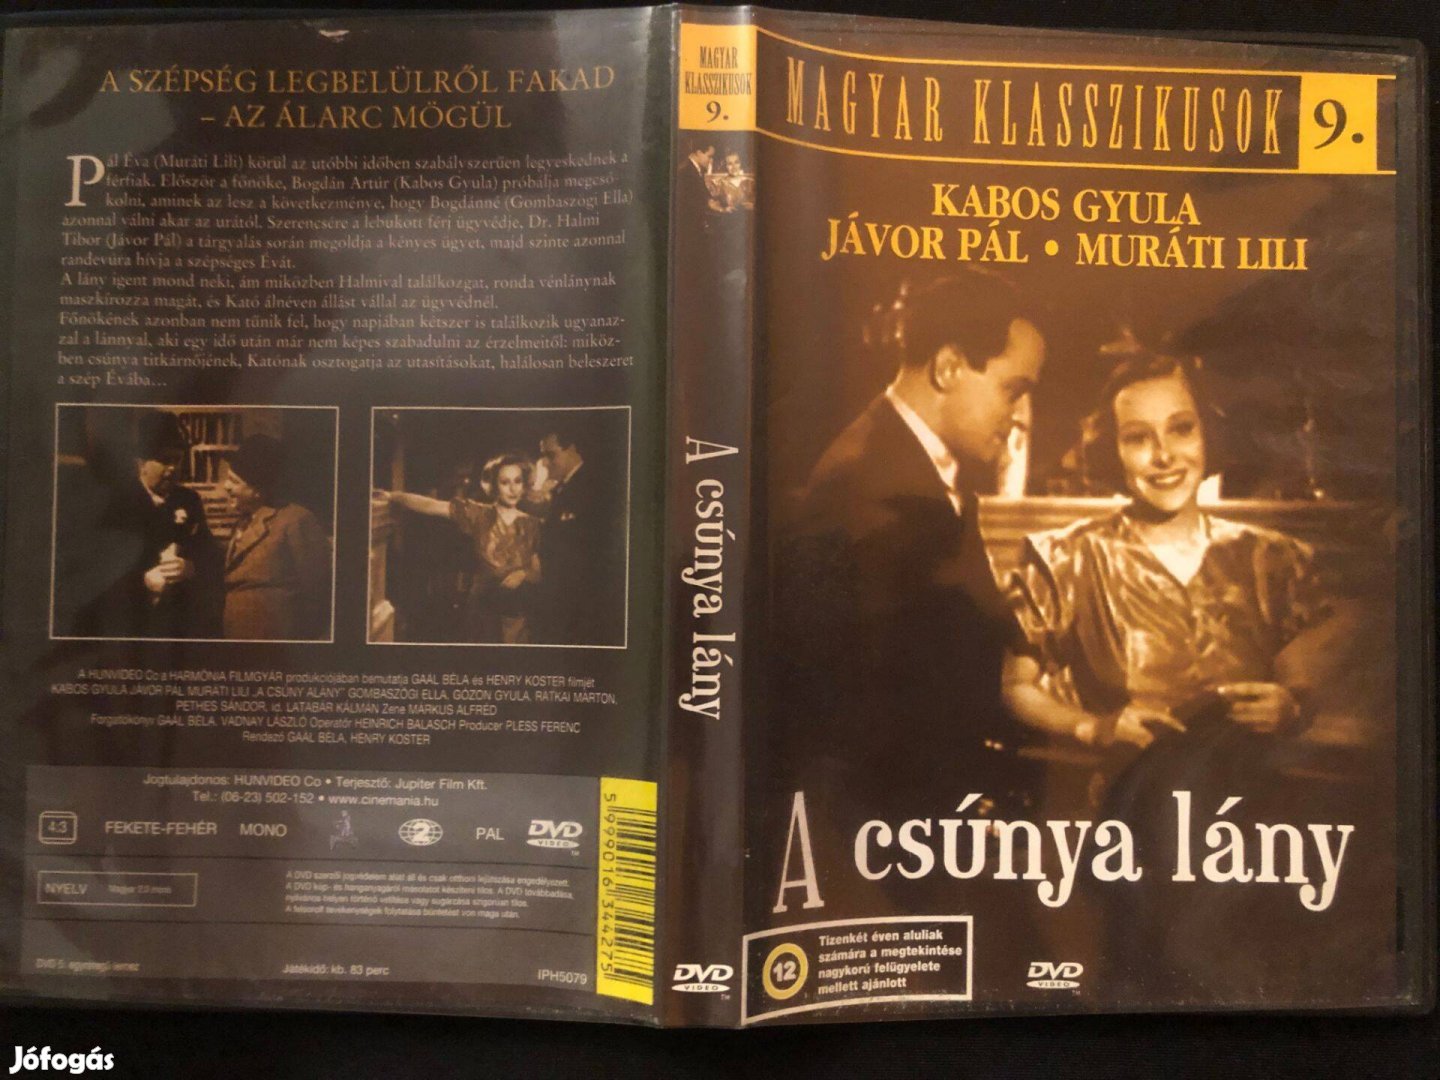 A csúnya lány DVD - Magyar klasszikusok 9. (karcmentes, Kabos Gyula)